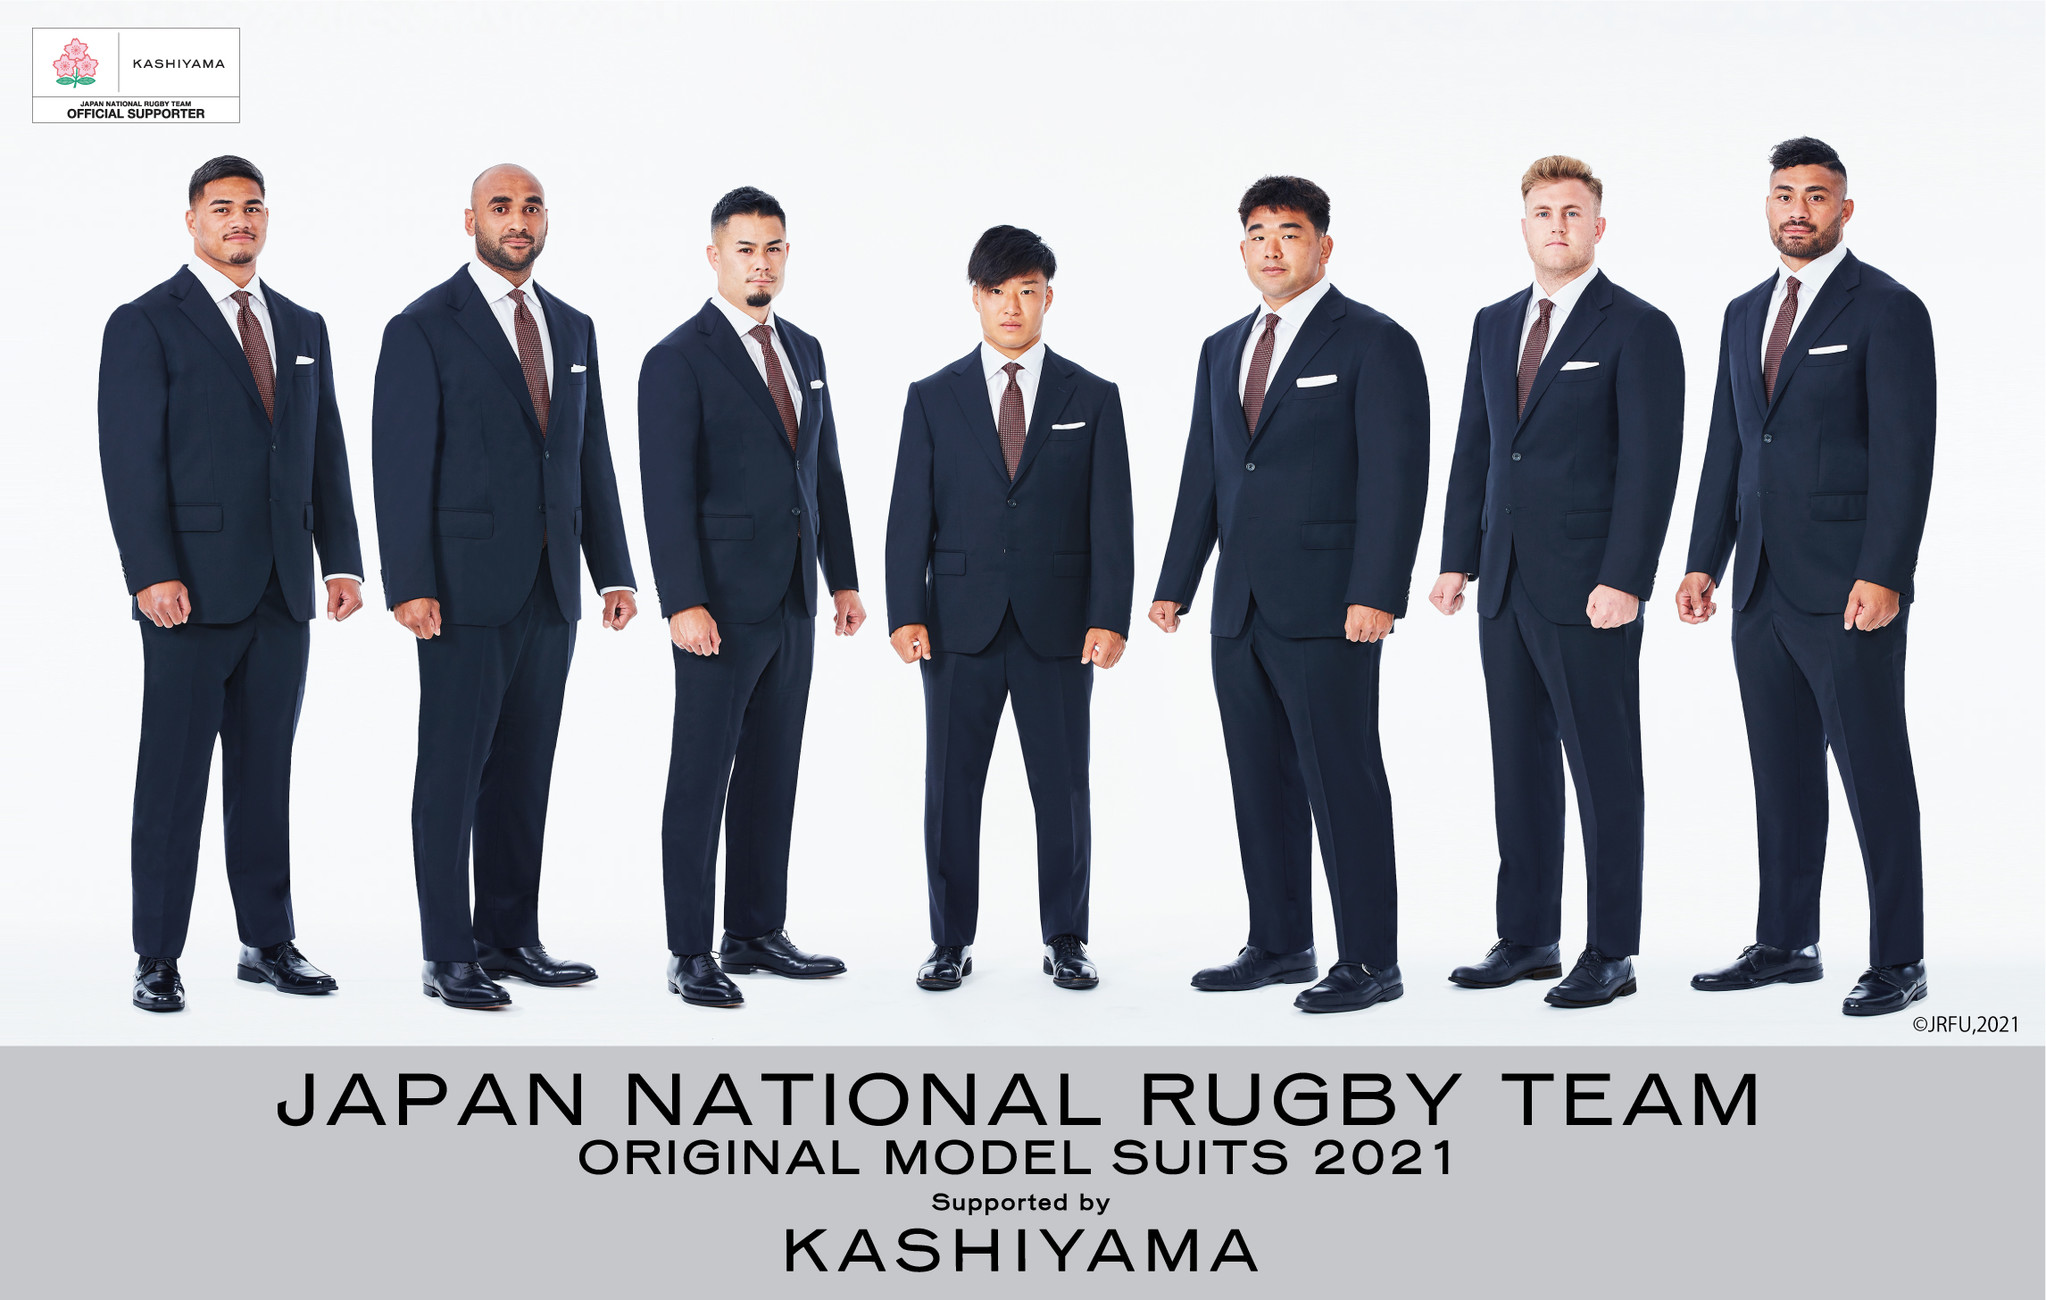 オーダーメイドブランド『KASHIYAMA』ラグビー日本代表にオリジナルモデルスーツを提供